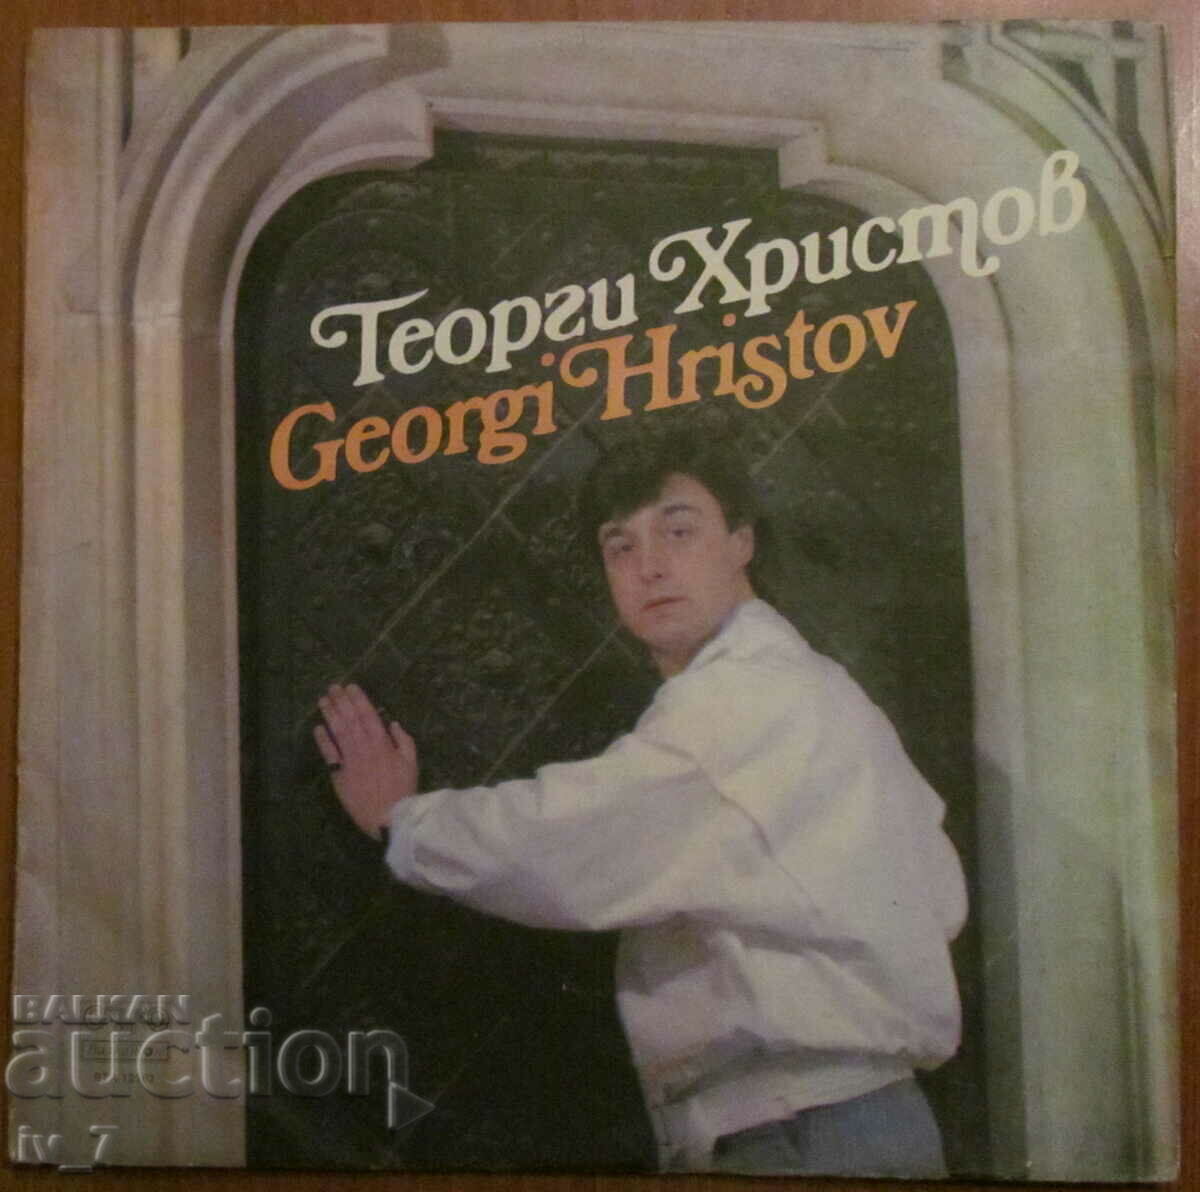 RECORD - GEORGI HRISTOV, format mare